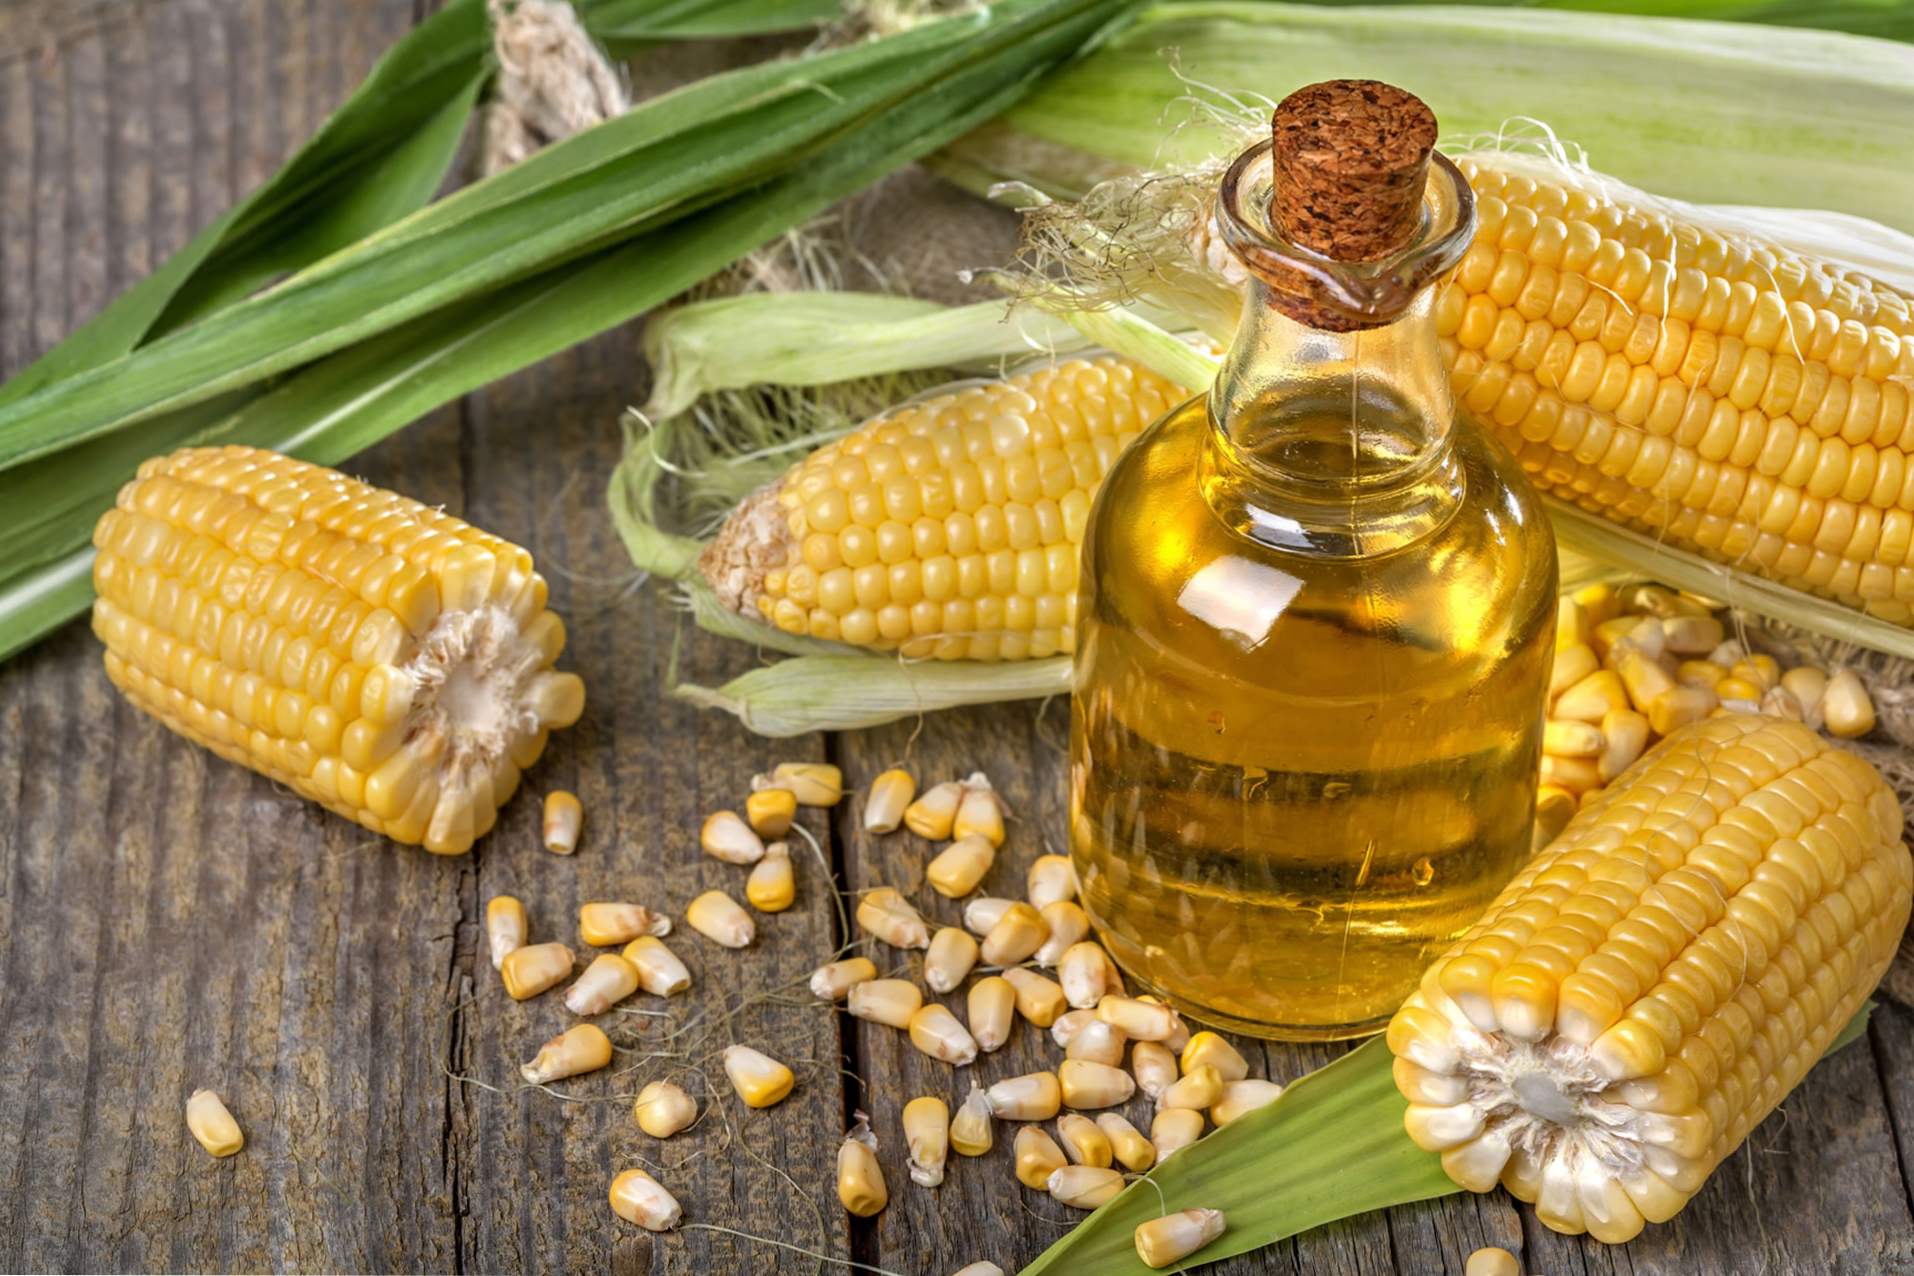 Kukuričný olej má priaznivé vlastnosti pre ľudské telo, použitie vo varení a kozmetike, kontraindikácie